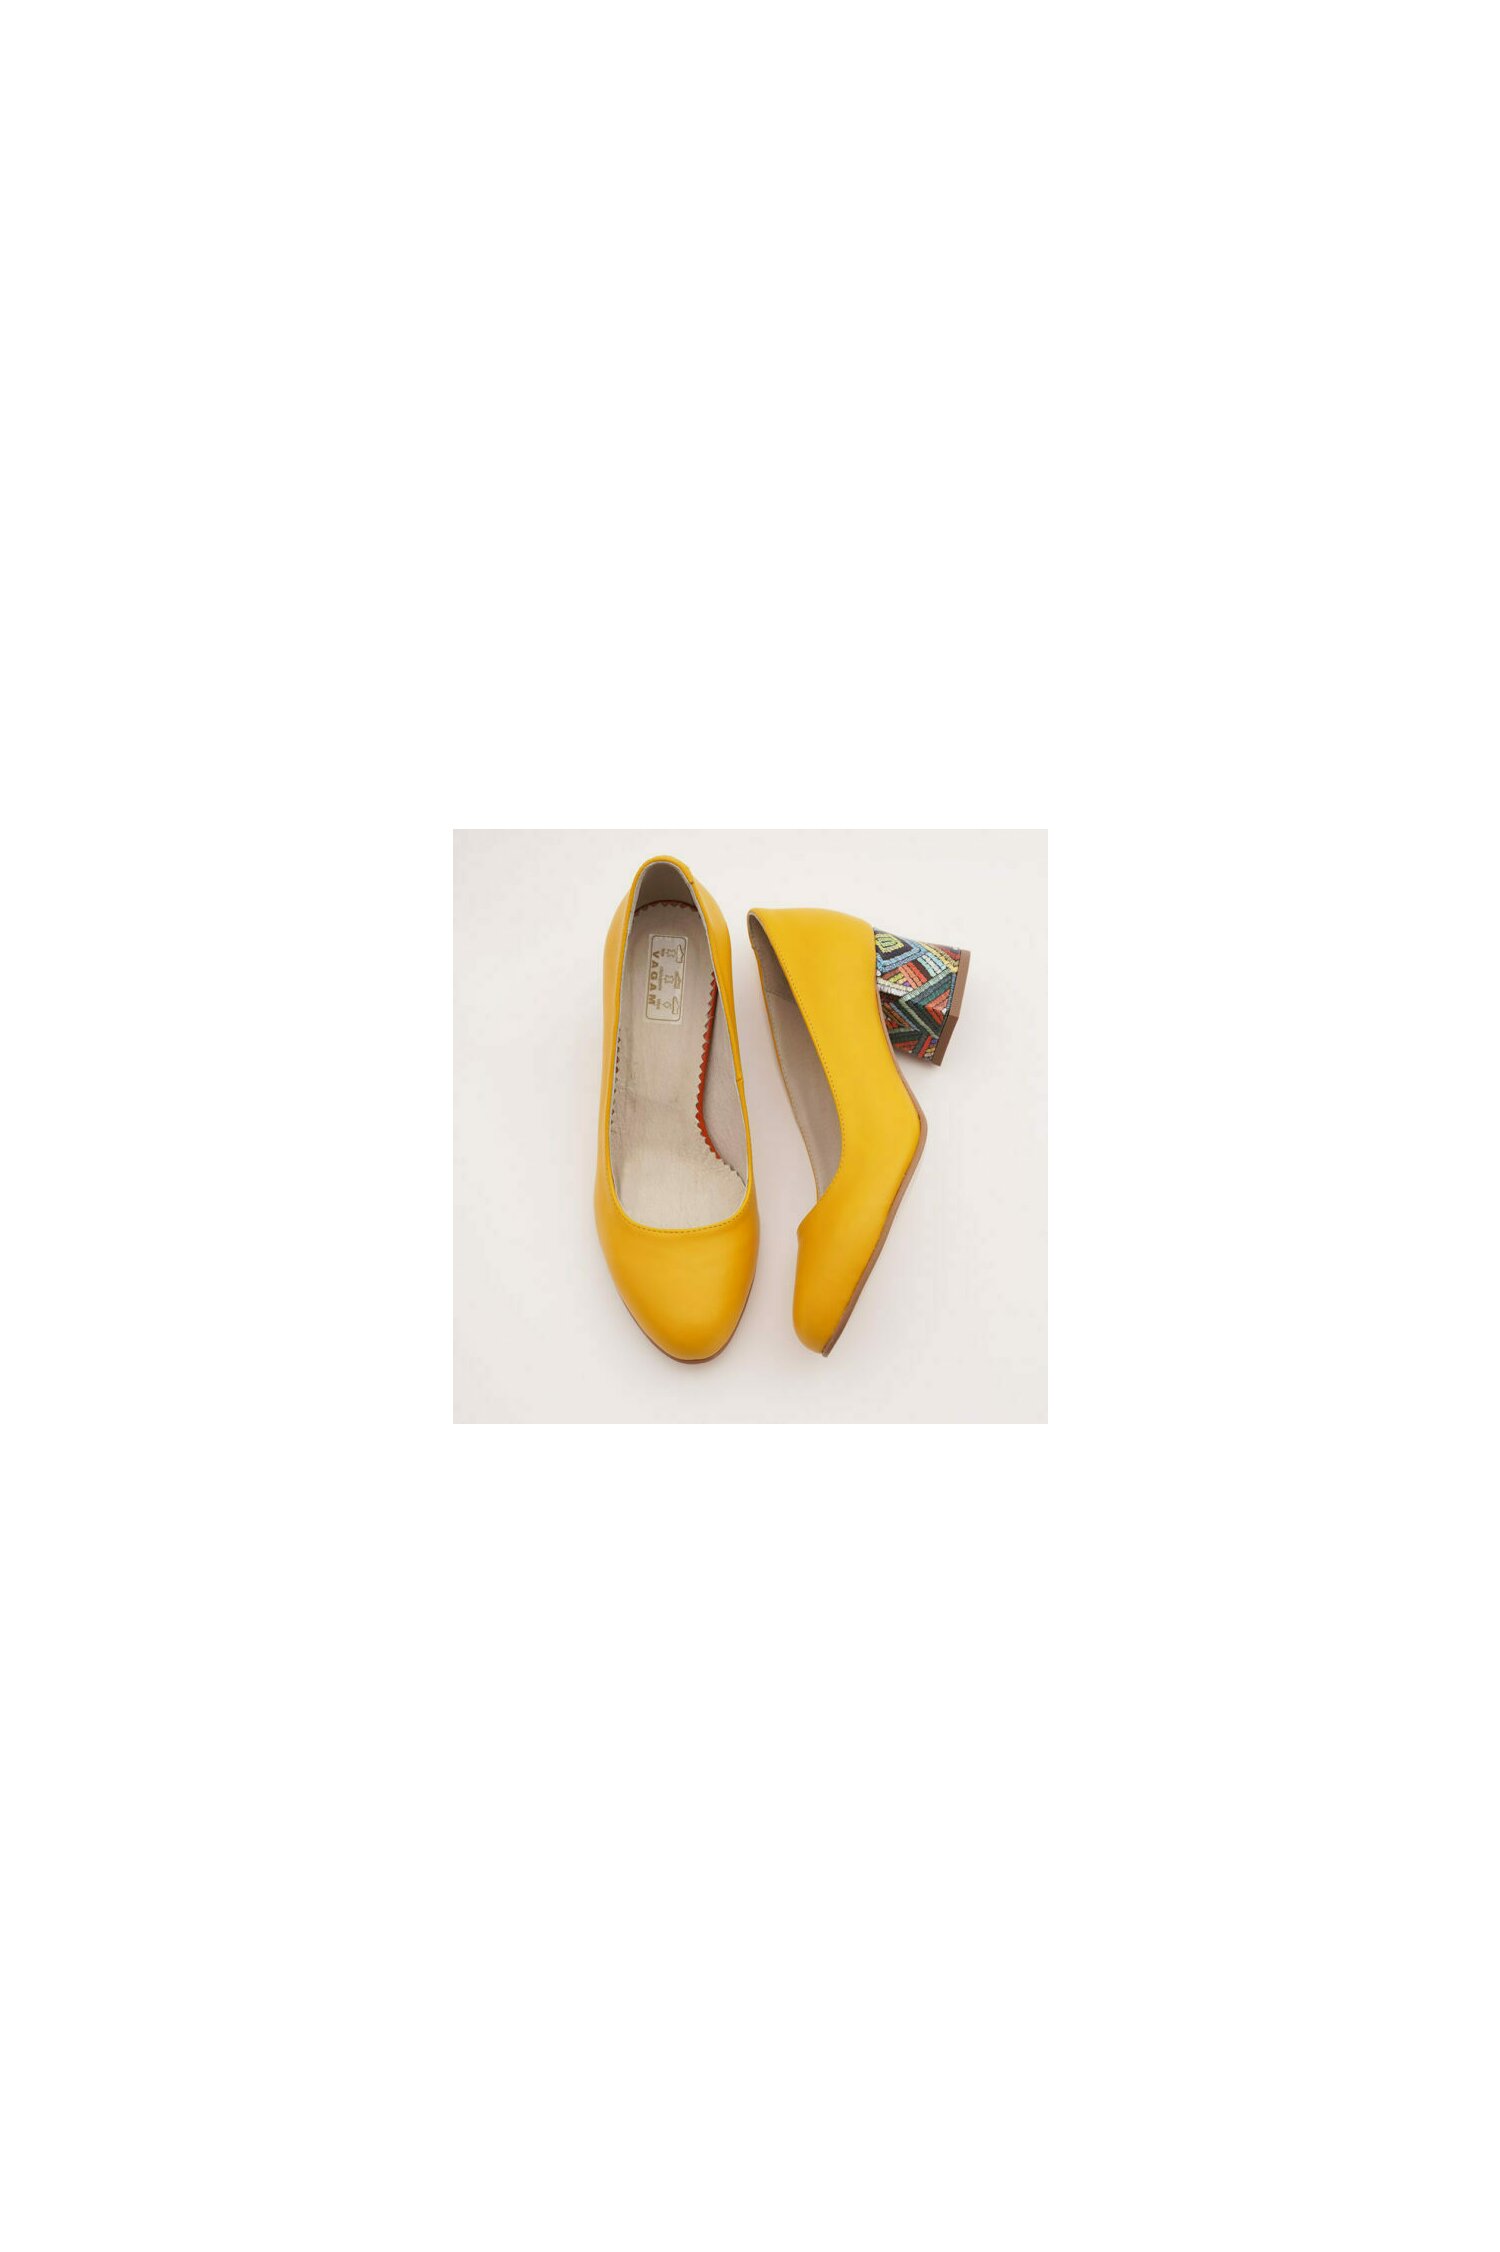 Pantofi galbeni cu imprimeu dungat multicolor pe toc image11